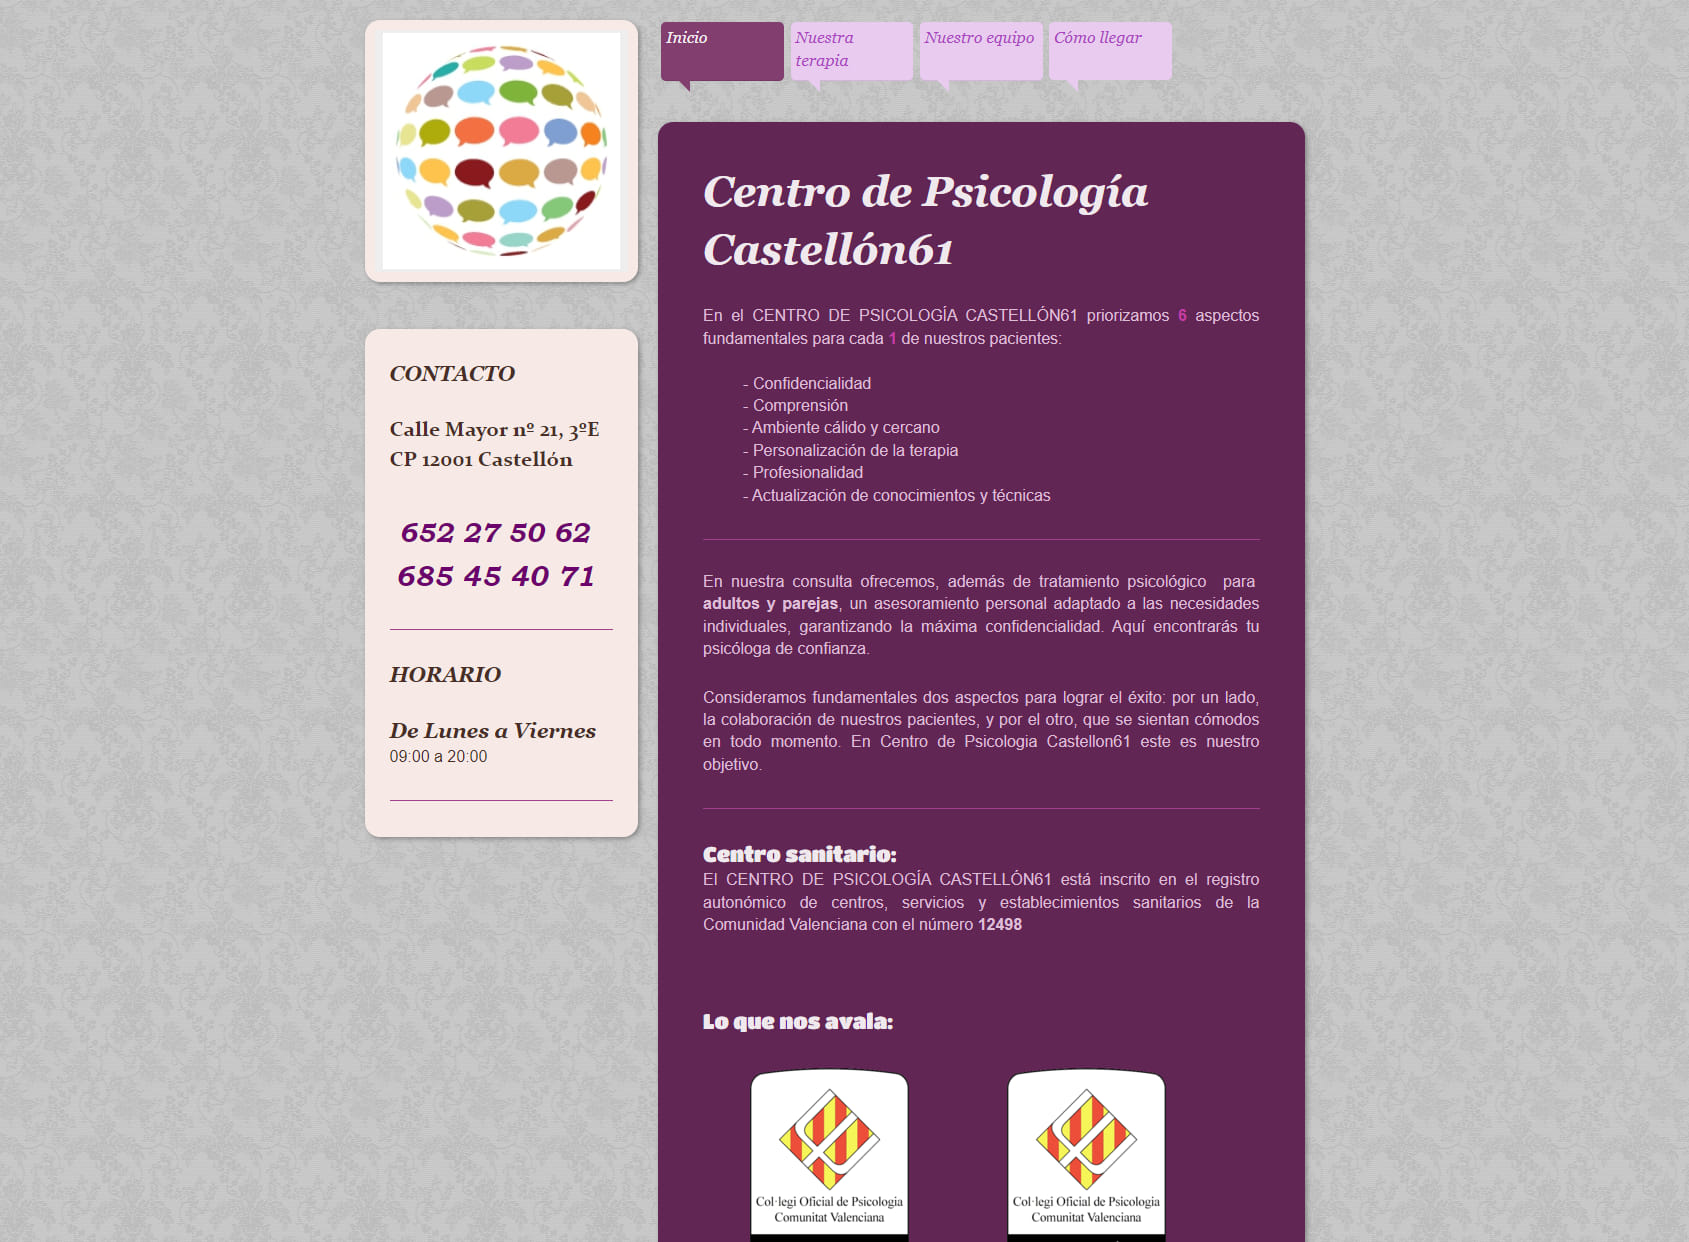 Centro de Psicología Castellón61